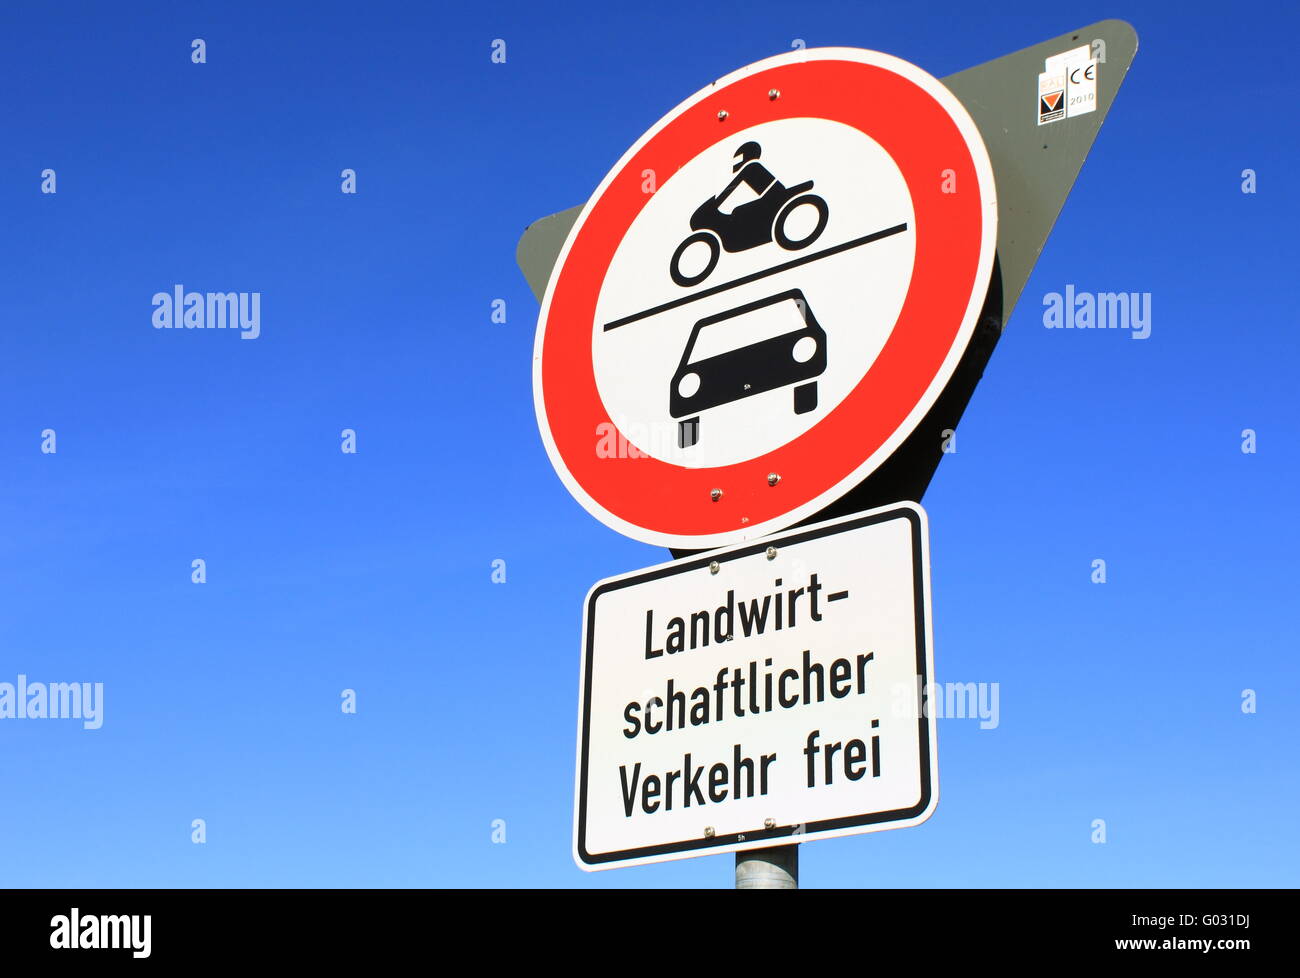 Durchfahrt verboten-No through traffic Stock Photo